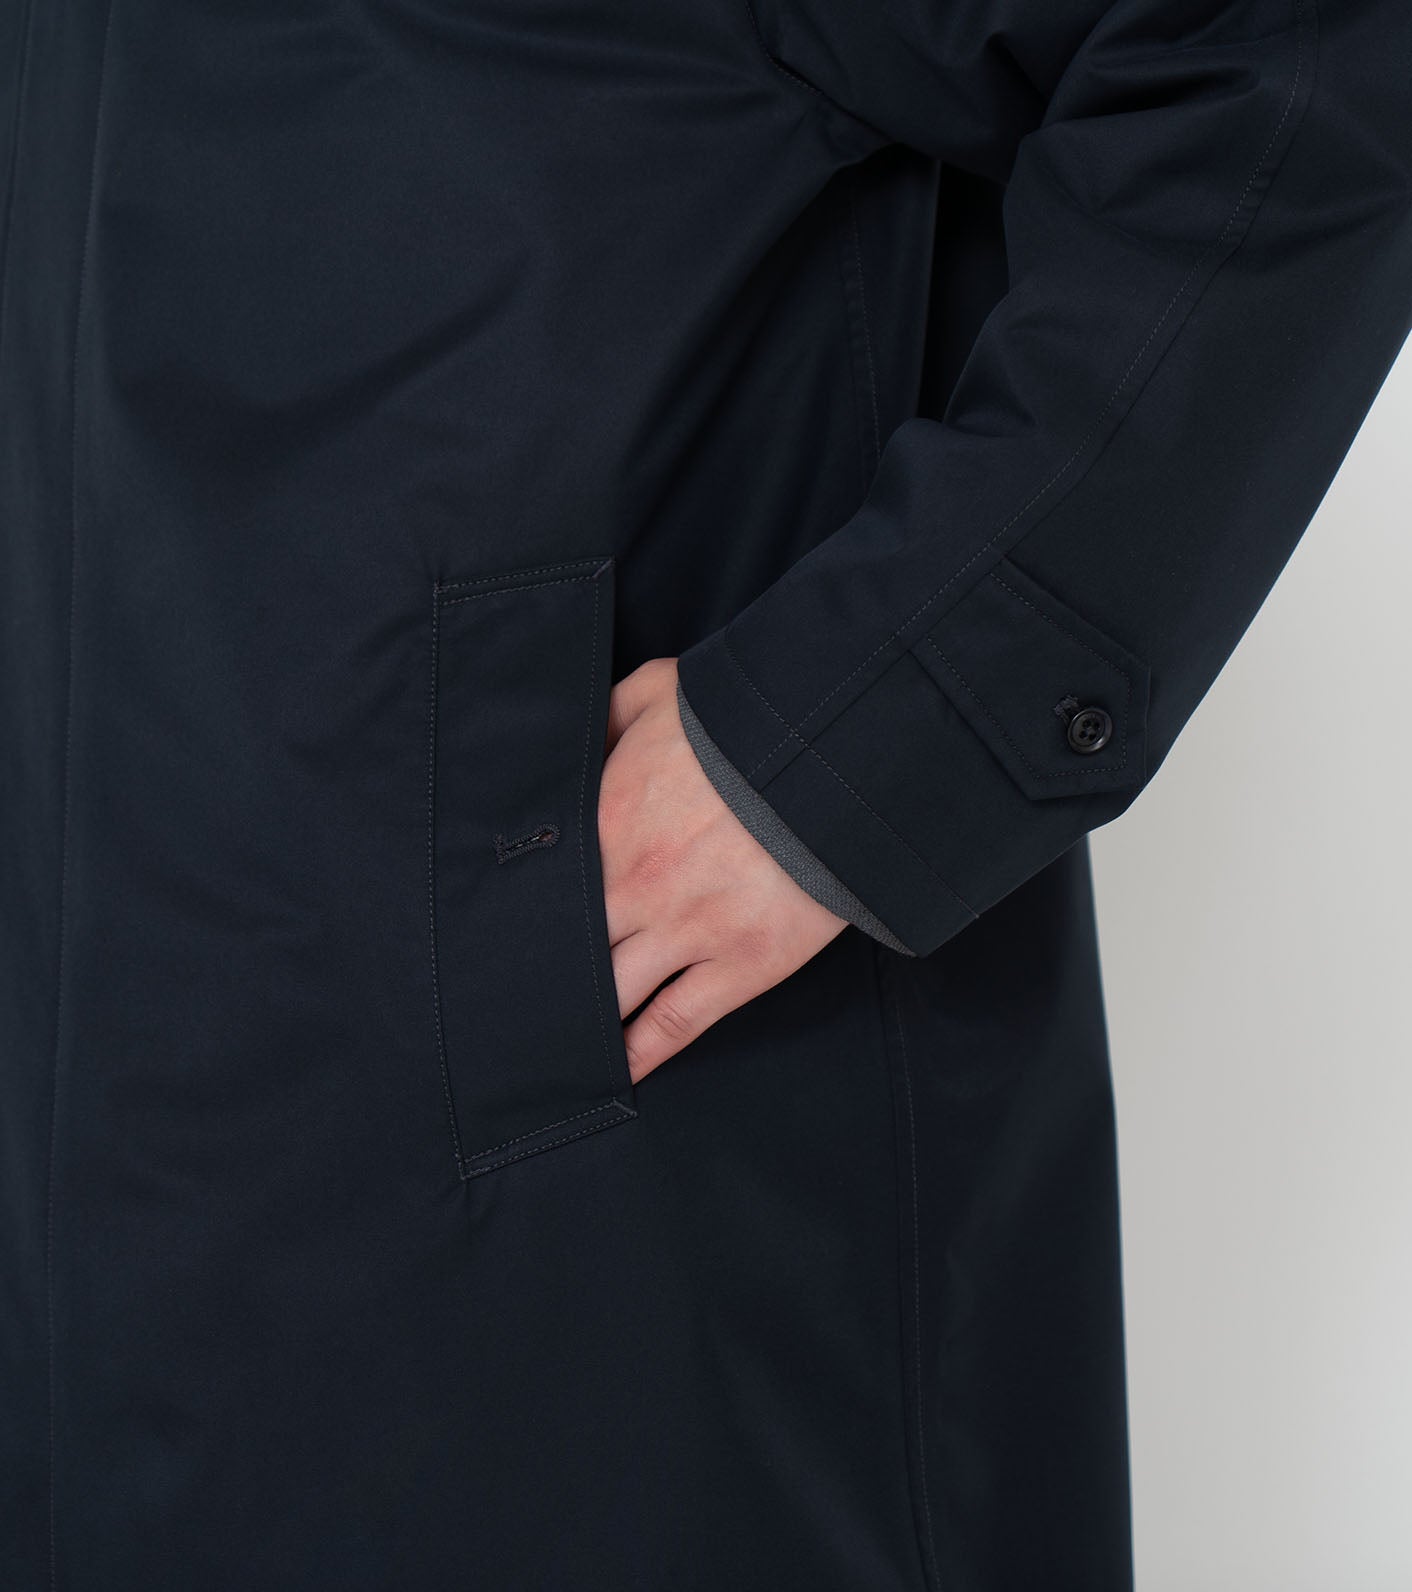 nanamica - Jacket - 2L GORE-TEX - Soutien Collar Coat - Beige